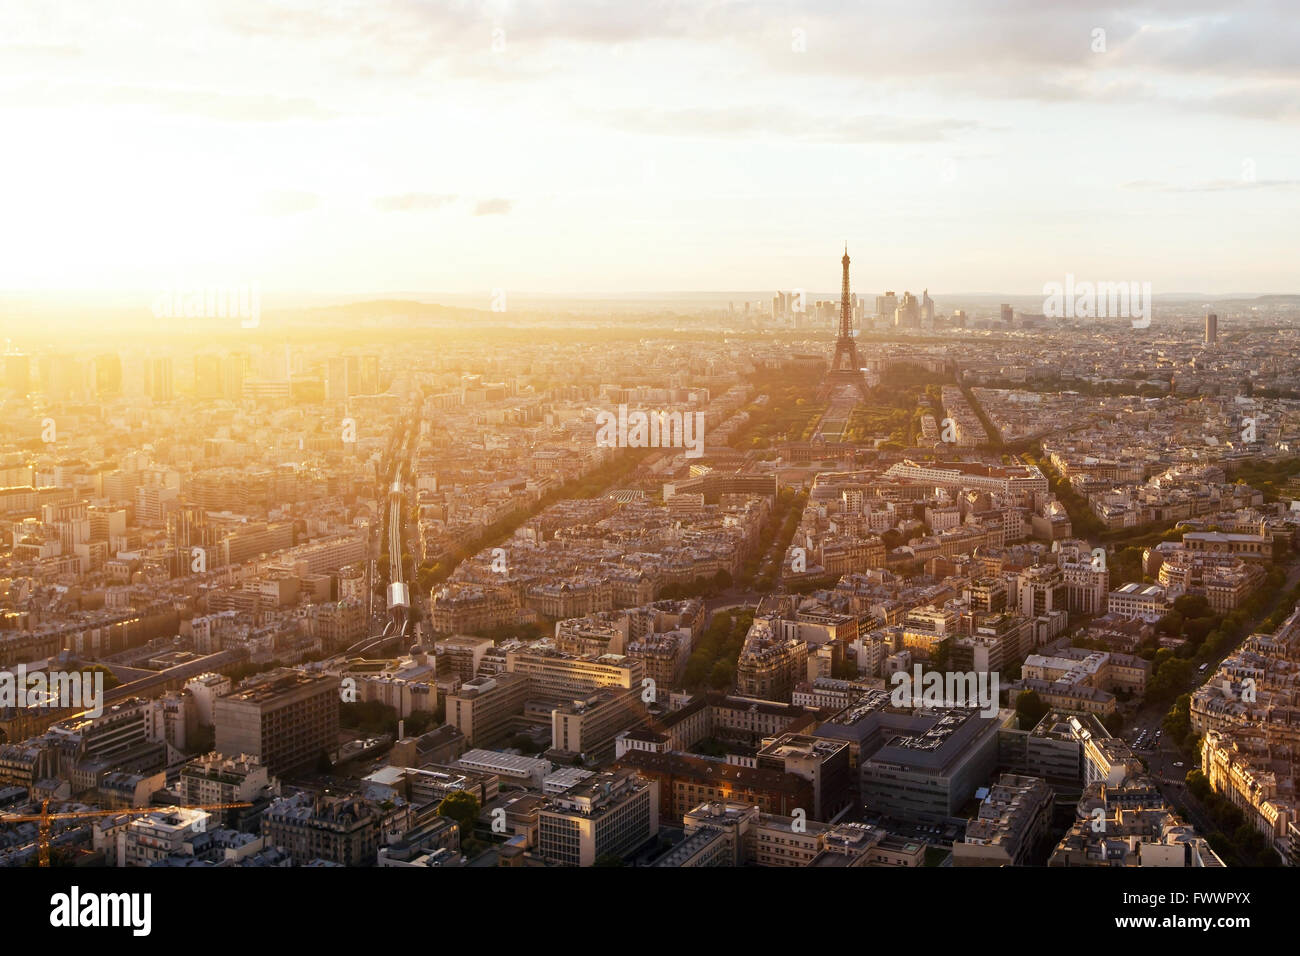 Belle vue panoramique vue aérienne de Paris et de la tour Eiffel au coucher du soleil, France Banque D'Images